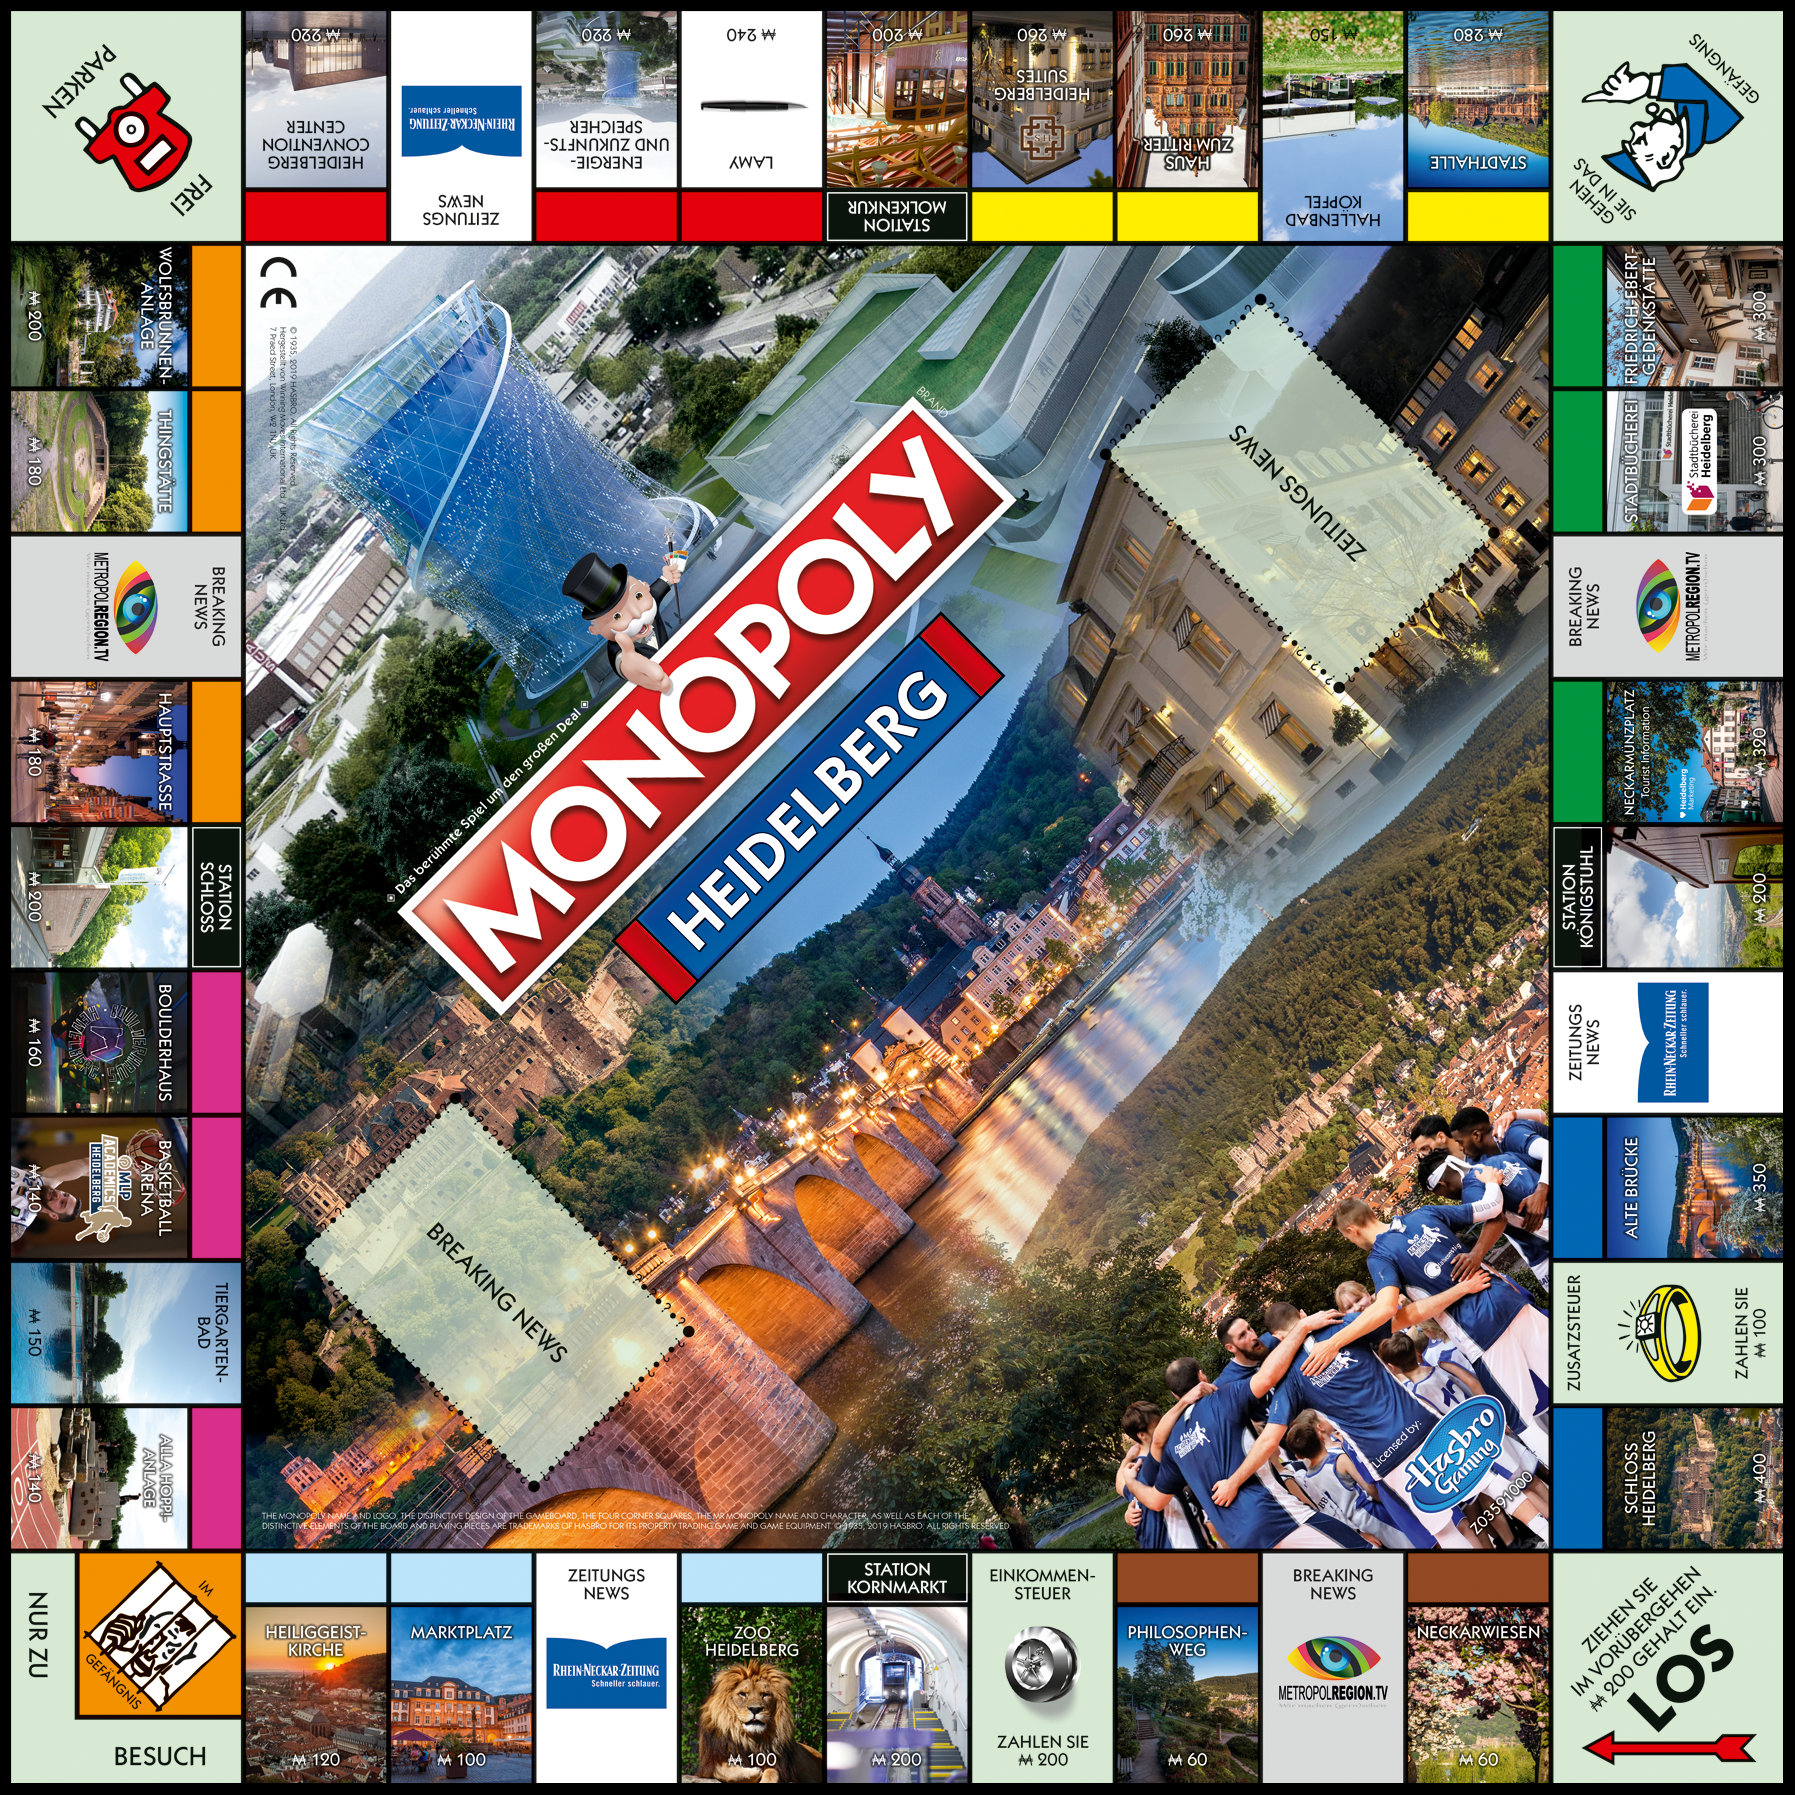 Monopoly heidelberg - Die besten Monopoly heidelberg verglichen!